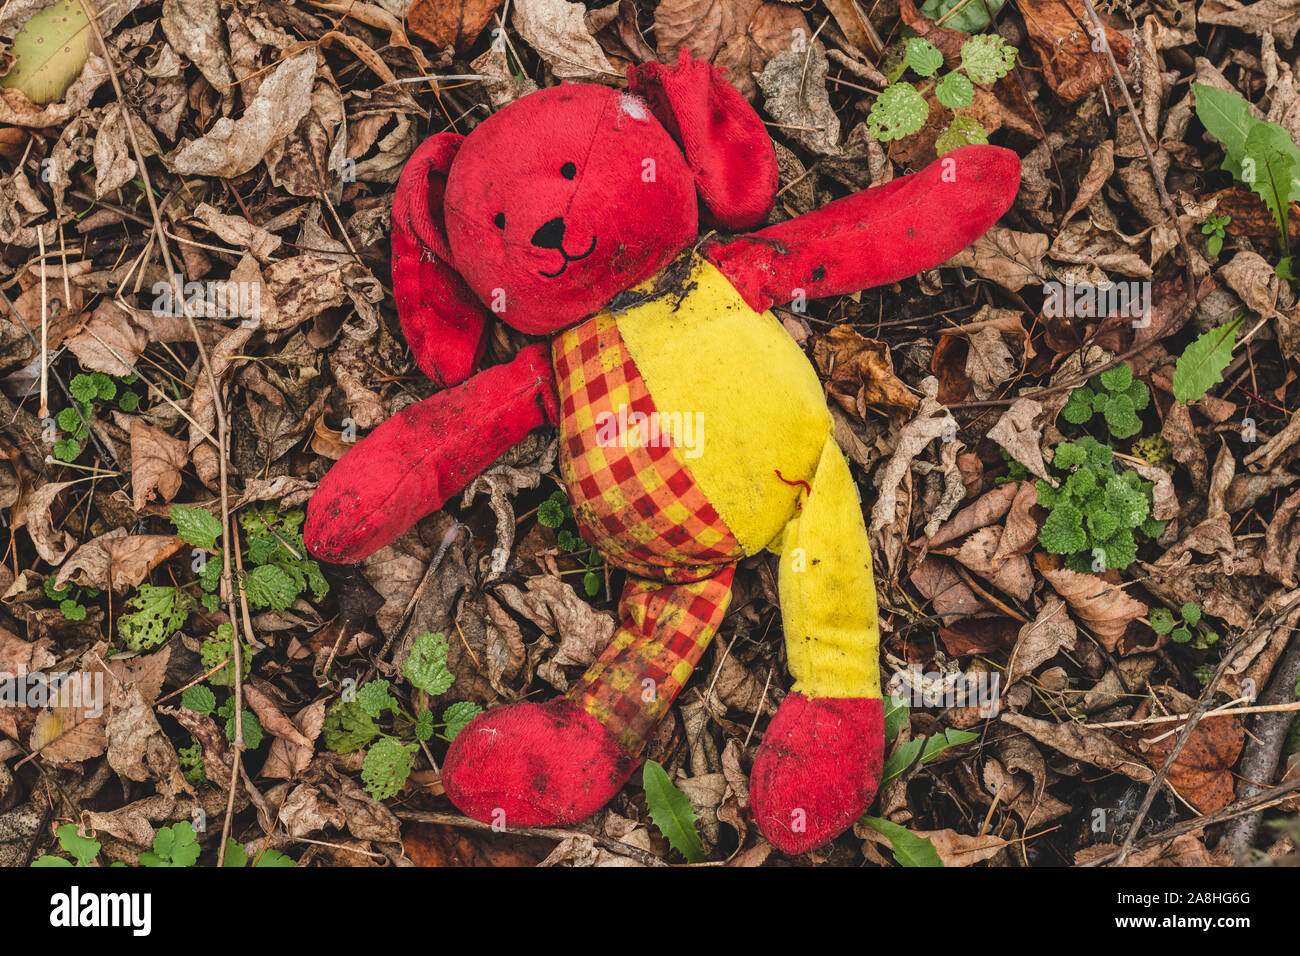 Peluche Perro revolcarse en el follaje. Perdido sucio juguete rojo yace en el suelo en el parque. Foto de stock